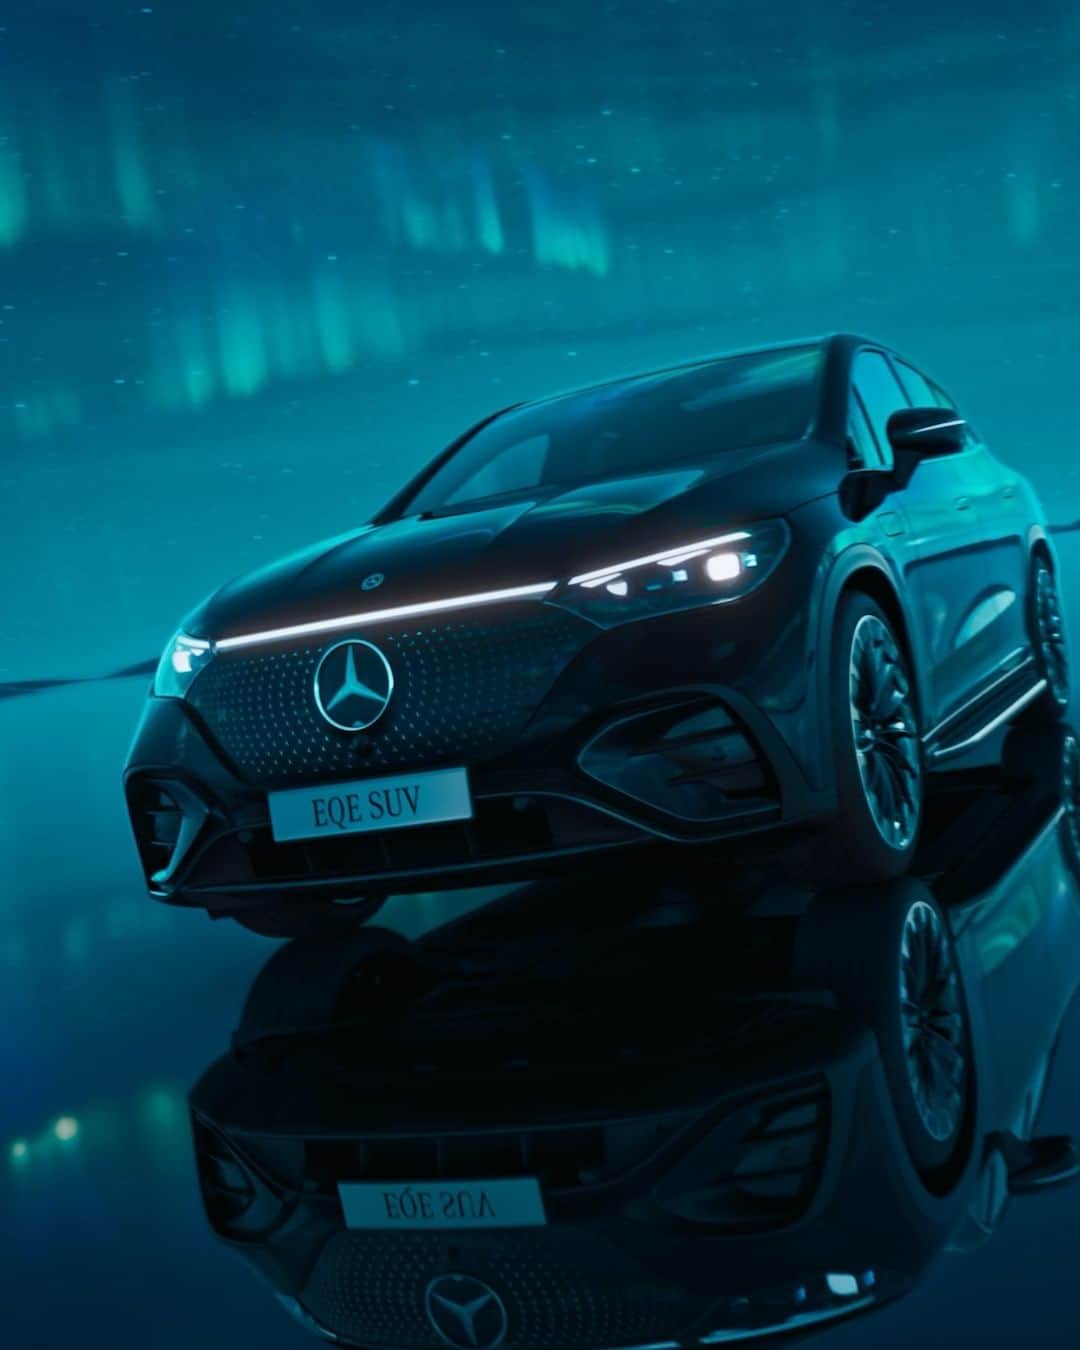 Mercedes-Benz Thailandのインスタグラム：「🔋⚡️ ชาร์จพลังให้เต็ม 100% แล้วออกเดินทางสู่โลกยุคใหม่!  Mercedes-Benz EQE 350 4MATIC SUV AMG Line ✨ รถยนต์ไฟฟ้า 100% ในรูปแบบ SUV ที่พร้อมให้คุณอัปเกรดการขับขี่ให้เหนือยิ่งขึ้น กับระยะทางการขับเคลื่อนได้ไกลถึง 558 กม. ต่อการชาร์จเพียง 1 ครั้ง ตอบโจทย์การเดินทางทั้งใกล้-ไกล ไม่ว่าจะสายครอบครัว หรือสายขนของก็สะดวกสบาย ด้วยพื้นที่ภายในที่กว้างขวาง ให้ทั้งความหรูหราและทันสมัยอย่างลงตัว รองรับทุกความต้องการในแบบที่คุณกำลังมองหา...ในโลกยุคใหม่!  👉🏻 ติดตามช่องทางของเราได้ที่  Website : www.mercedes-benz.co.th/27-homepage  Line : @mercedesbenzth : lin.ee/jaqvPXF  Facebook : mb4.me/MBTHFA  Instagram : mb4.me/MBTHIG  YouTube : mb4.me/MBTHYT  *อุปกรณ์บางส่วนในภาพอาจแตกต่างจากที่จำหน่ายจริง โปรดตรวจสอบรายการอุปกรณ์ของรถยนต์แต่ละรุ่นที่ผู้จำหน่ายฯ อย่างเป็นทางการทั่วประเทศ​​ *ระยะทางถูกวัดตามมาตรฐานของ DIR 2017/1151/EU ซึ่งเป็นไปตาม WLTP *ระยะทางที่ขับได้จริงขึ้นอยู่กับพฤติกรรมการขับขี่ของแต่ละบุคคล ลักษณะเส้นทาง อุณหภูมิแวดล้อม จำนวนผู้โดยสารในรถ และปัจจัยอื่นๆ *ระยะเวลาในการชาร์จจริงขึ้นอยู่กับ กำลังไฟในการชาร์จ อุณหภูมิระหว่างชาร์จ ประสิทธิภาพการทำงานของแบตเตอรี่ ประสิทธิภาพของสายชาร์จ ประสิทธิภาพของสถานีชาร์จและปัจจัยอื่นๆ  #EQESUV #MercedesBenz #MercedesBenzThailand」